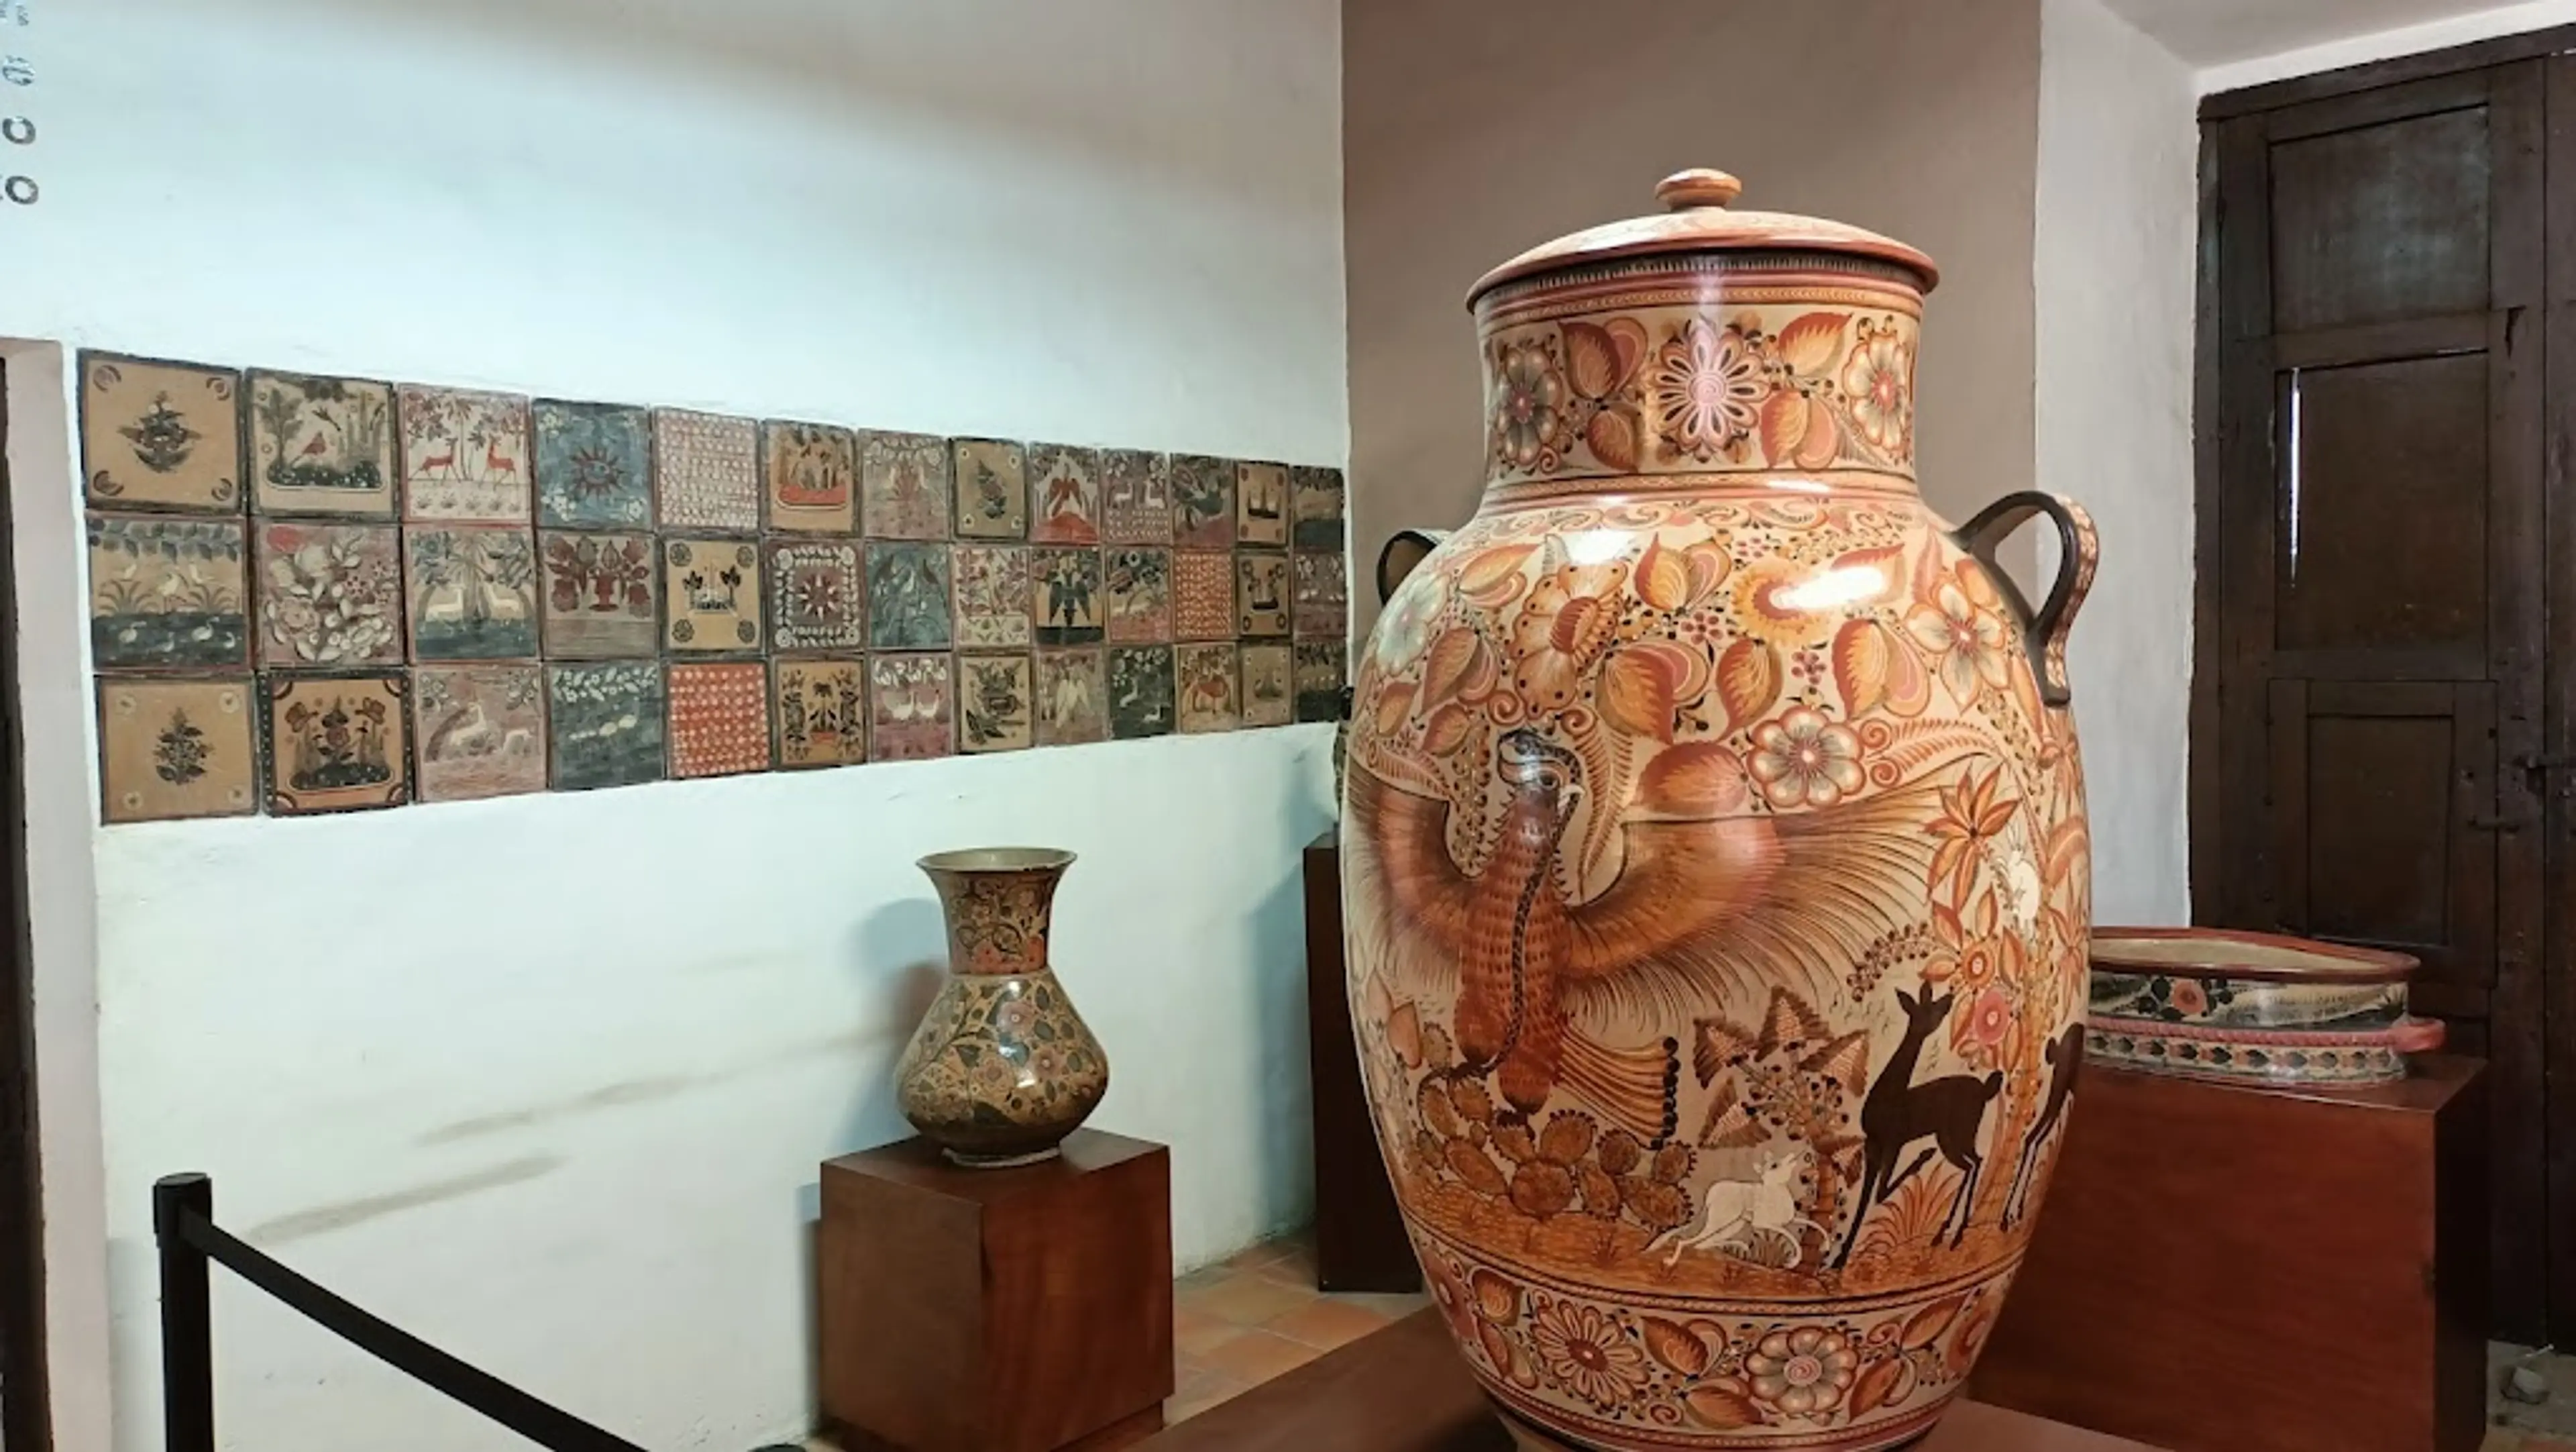 Ceramic Museum